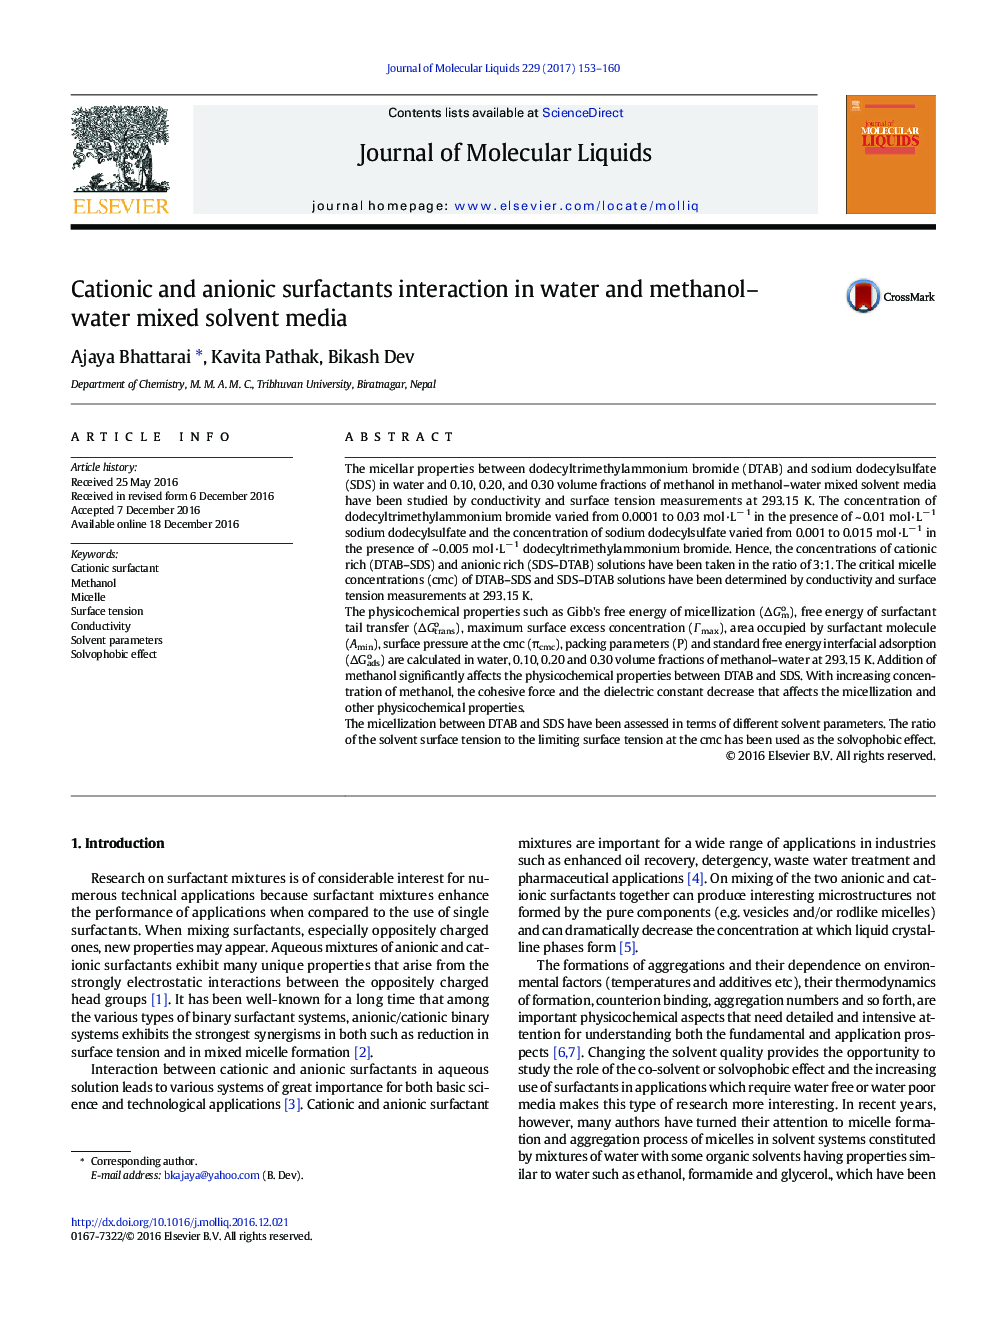 تعامل کاتیونیک و آنیونی سورفکتانت در محیط حلال مخلوط آب و متانول 